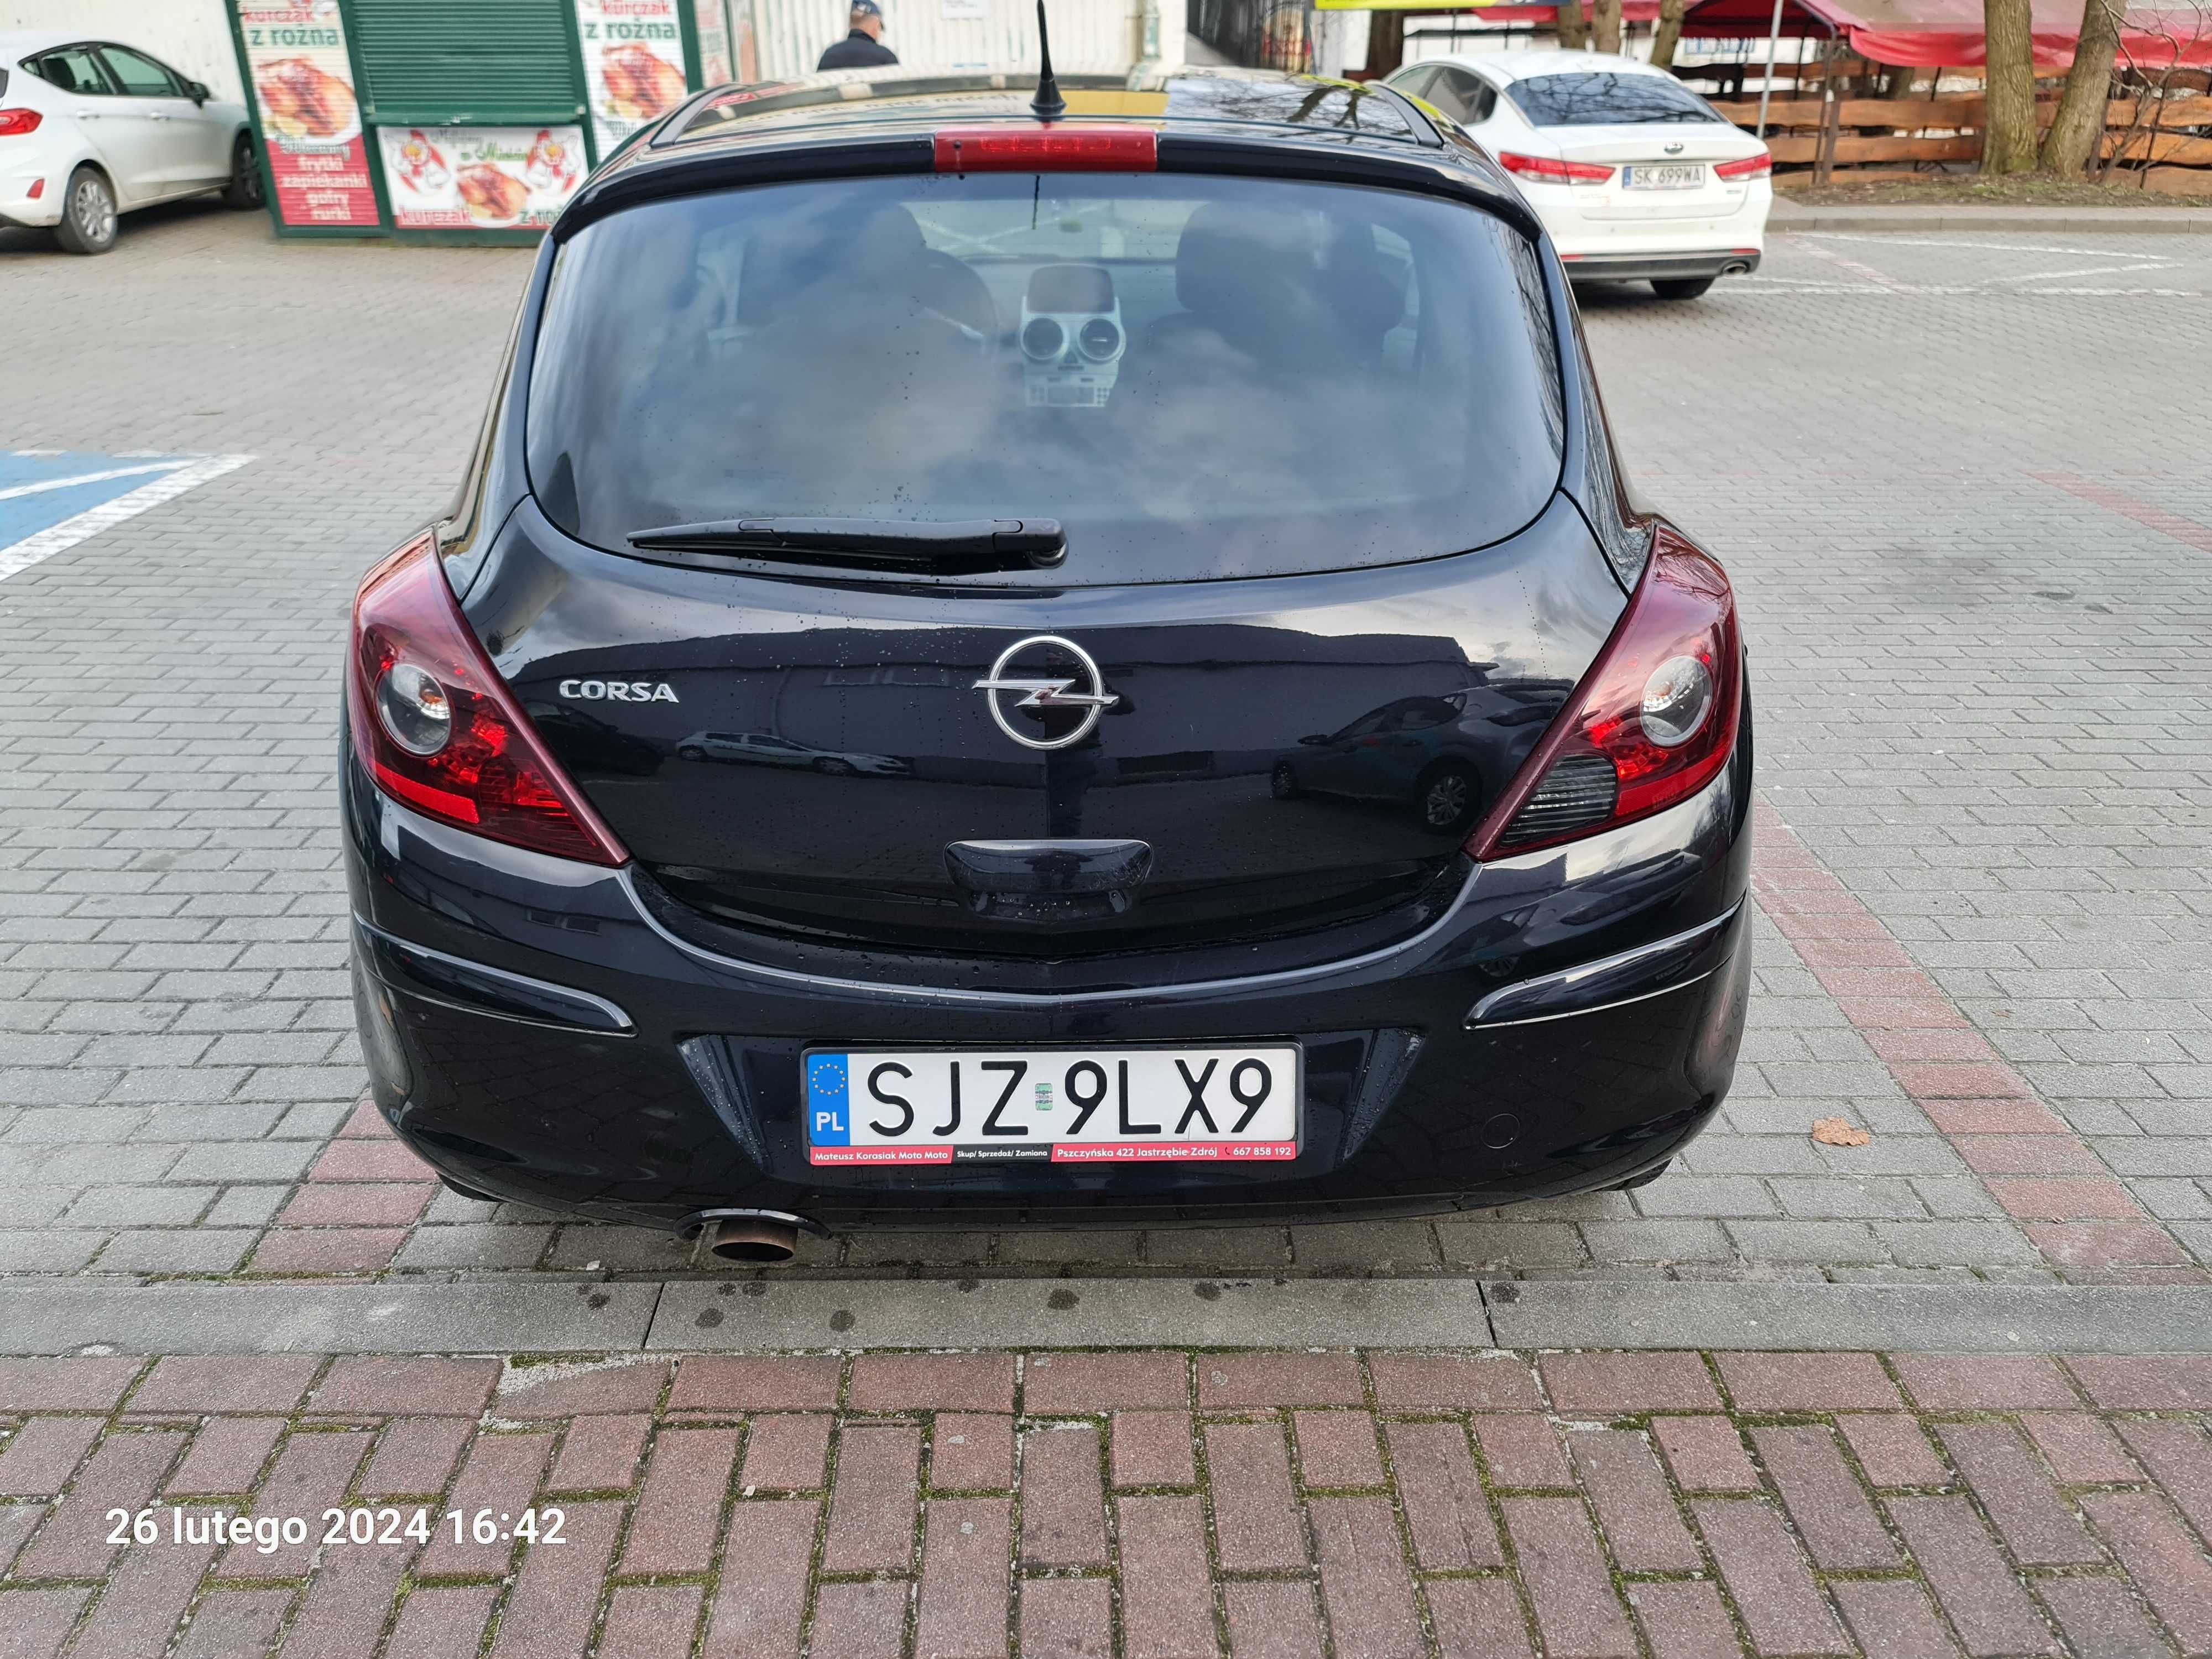 Sprzedam Opel Corsa - 1.4 - stan bardzo dobry